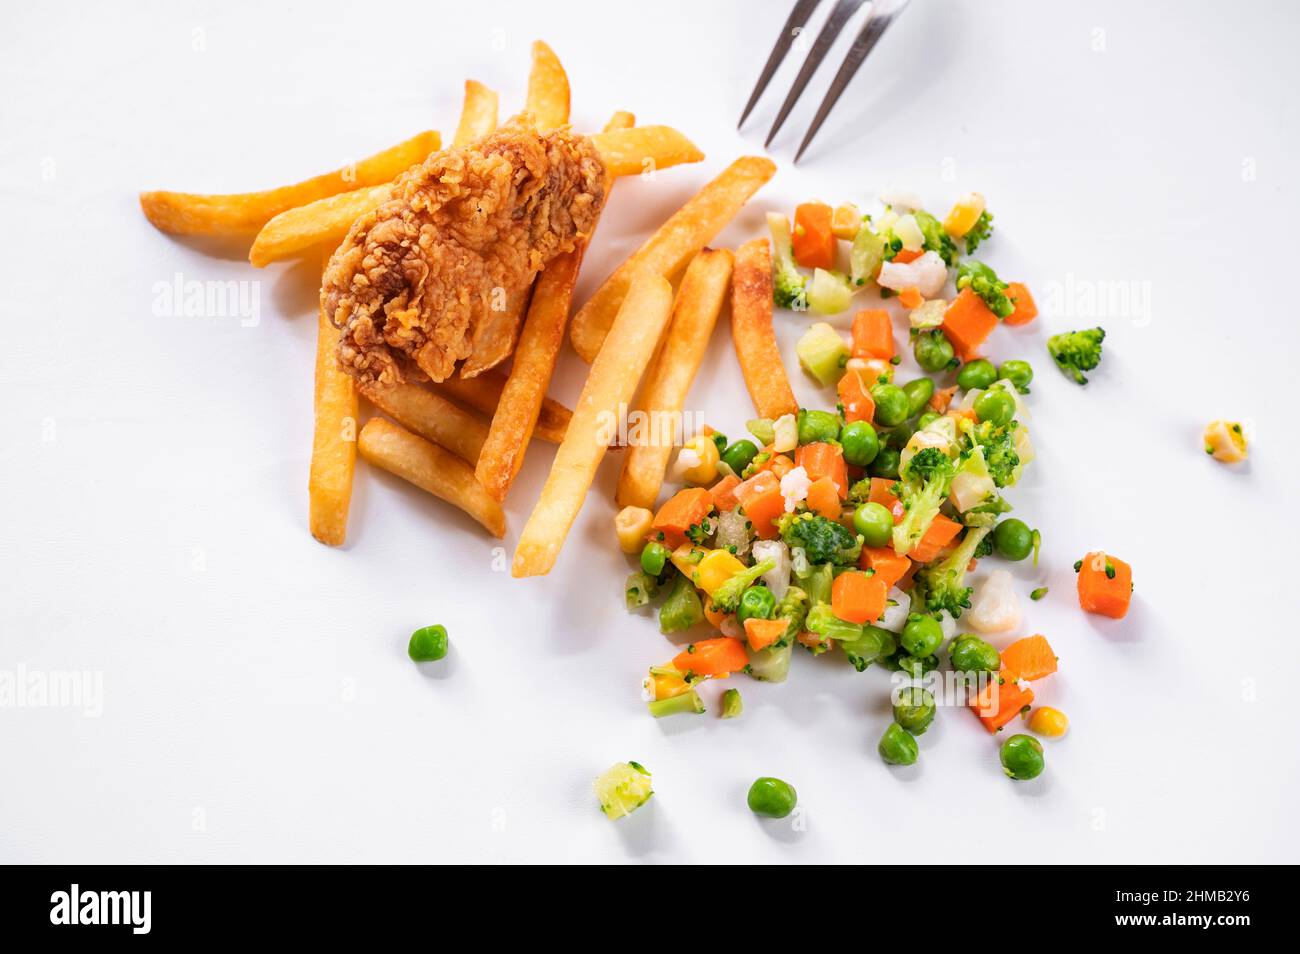 Un morceau de viande de poulet frite en flocons de maïs, frites et légumes ( pois, carottes, maïs, chou-fleur et brocoli) éparpillés sur fond blanc, p Banque D'Images